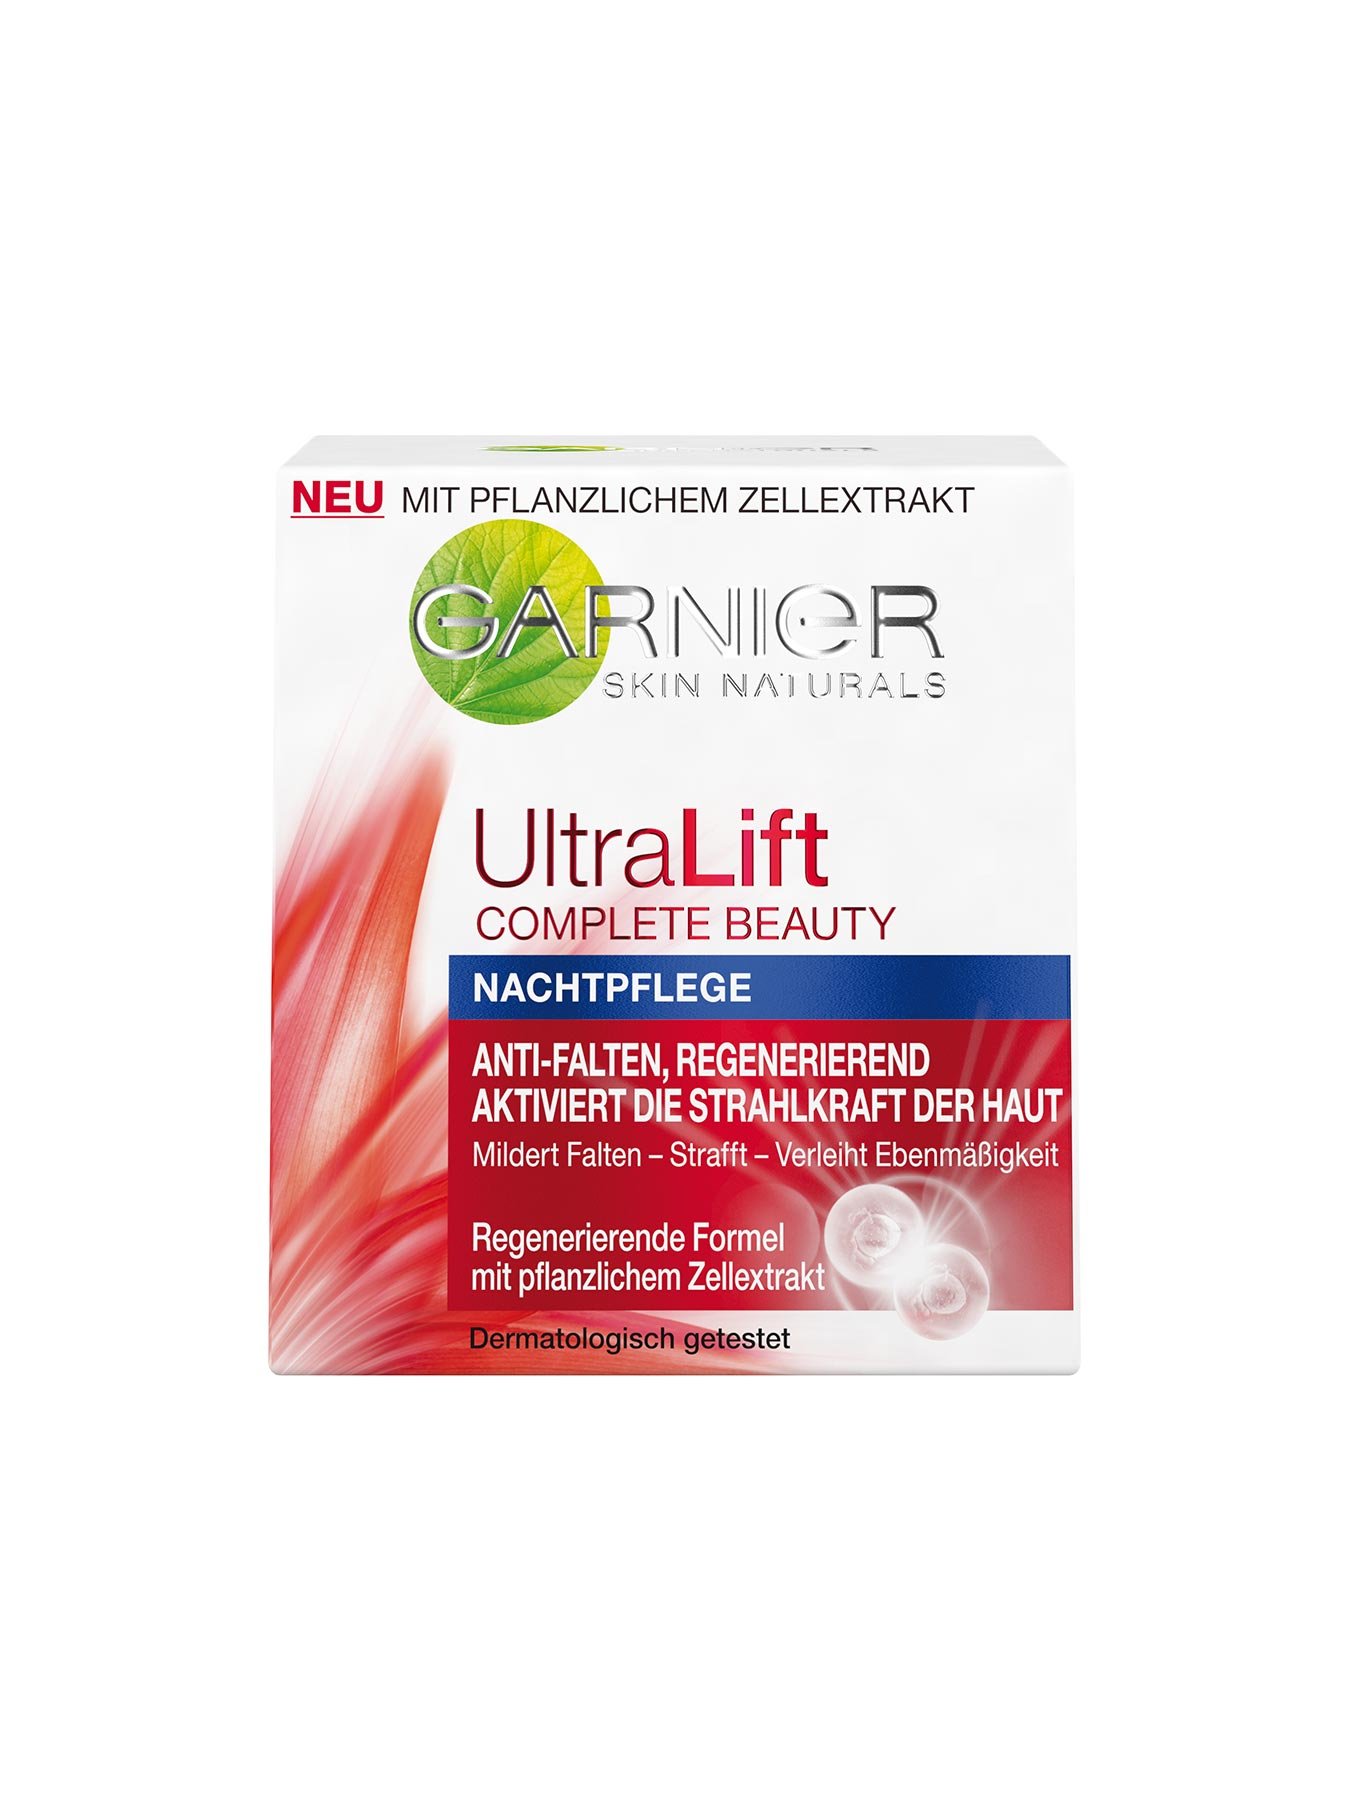 Nachtpflege-Ultra-Lift-Complete-Beauty-50ml-Verpackung-Vorderseite-Garnier-Deutschland-gr